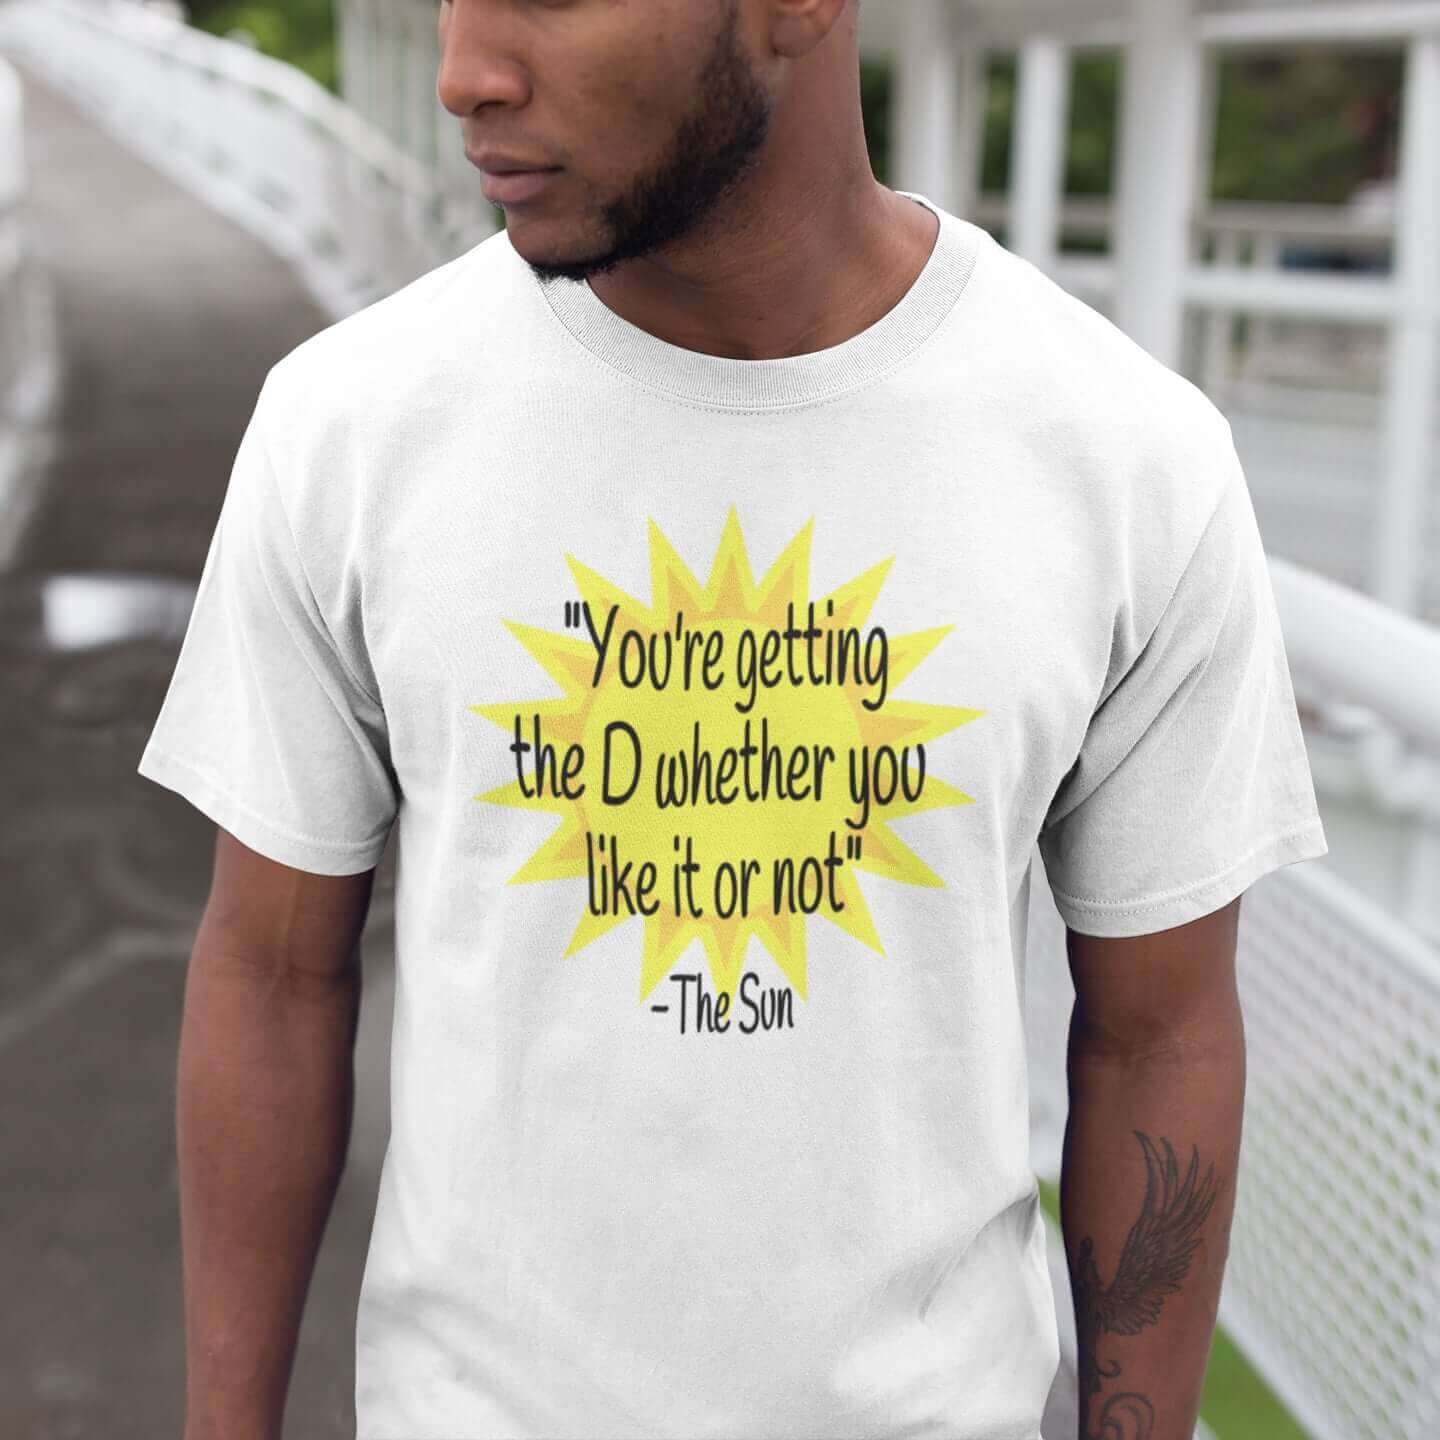 Sun vitamin D penis joke T-shirt.